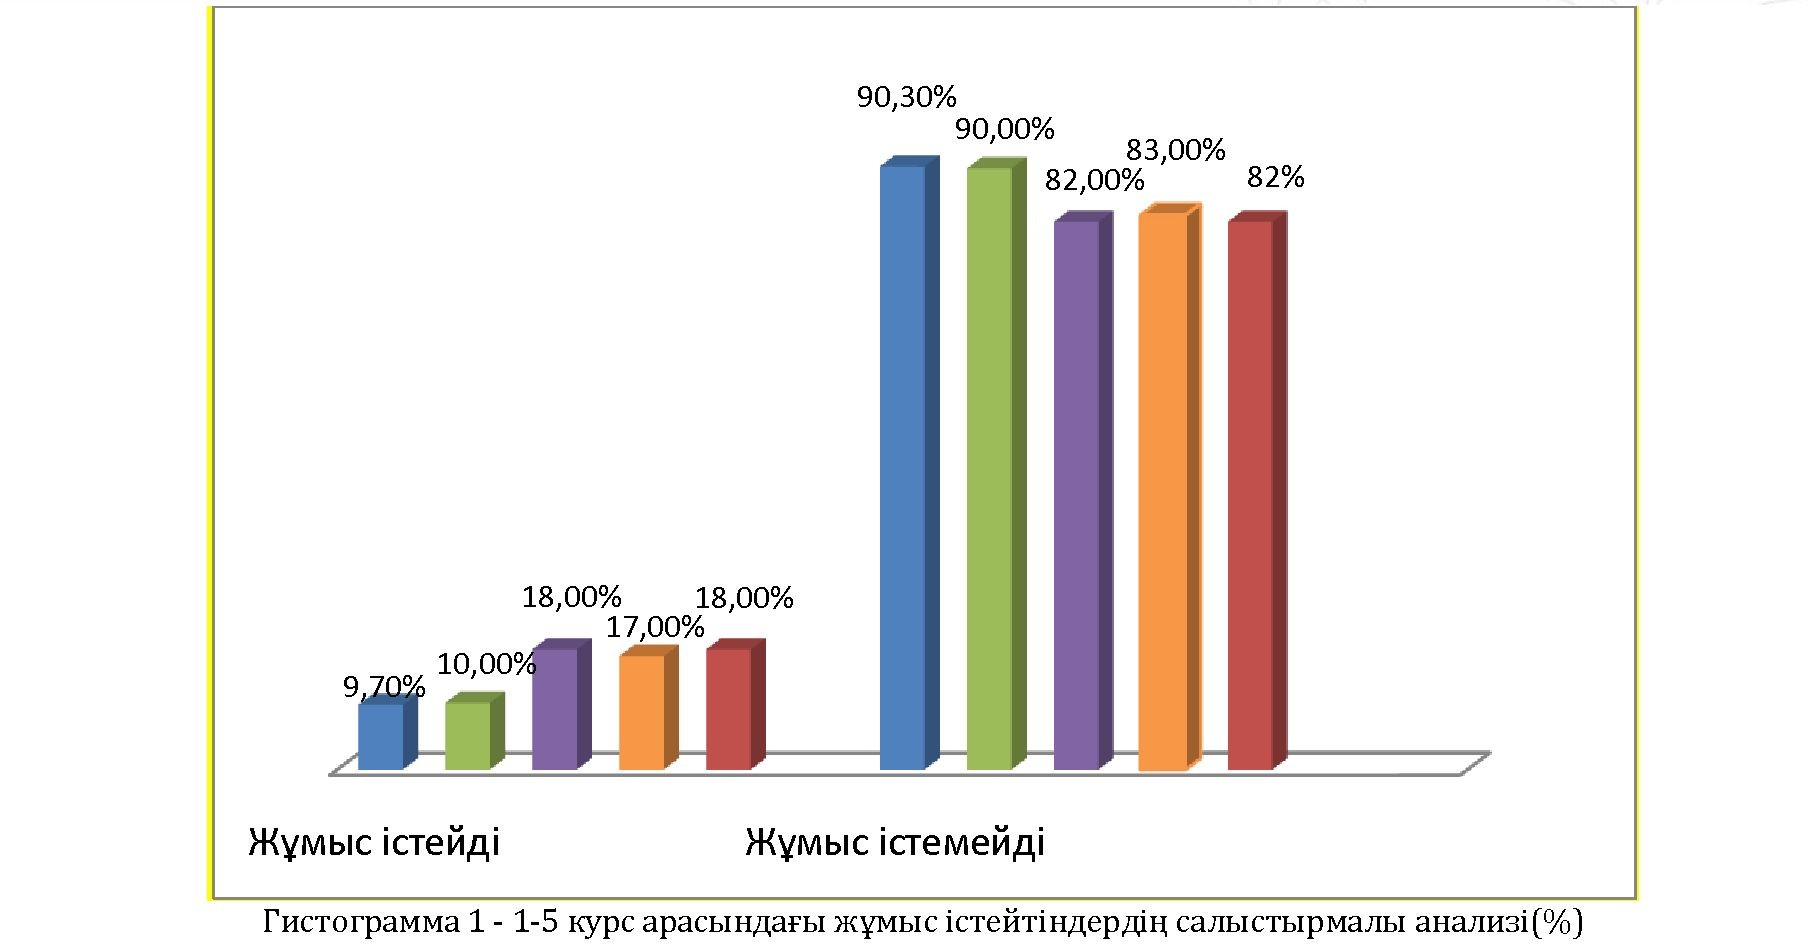 Мінез-құлық факторларының қазақ ұлттық медицина университетінің студенттеріне тигізетін әсері